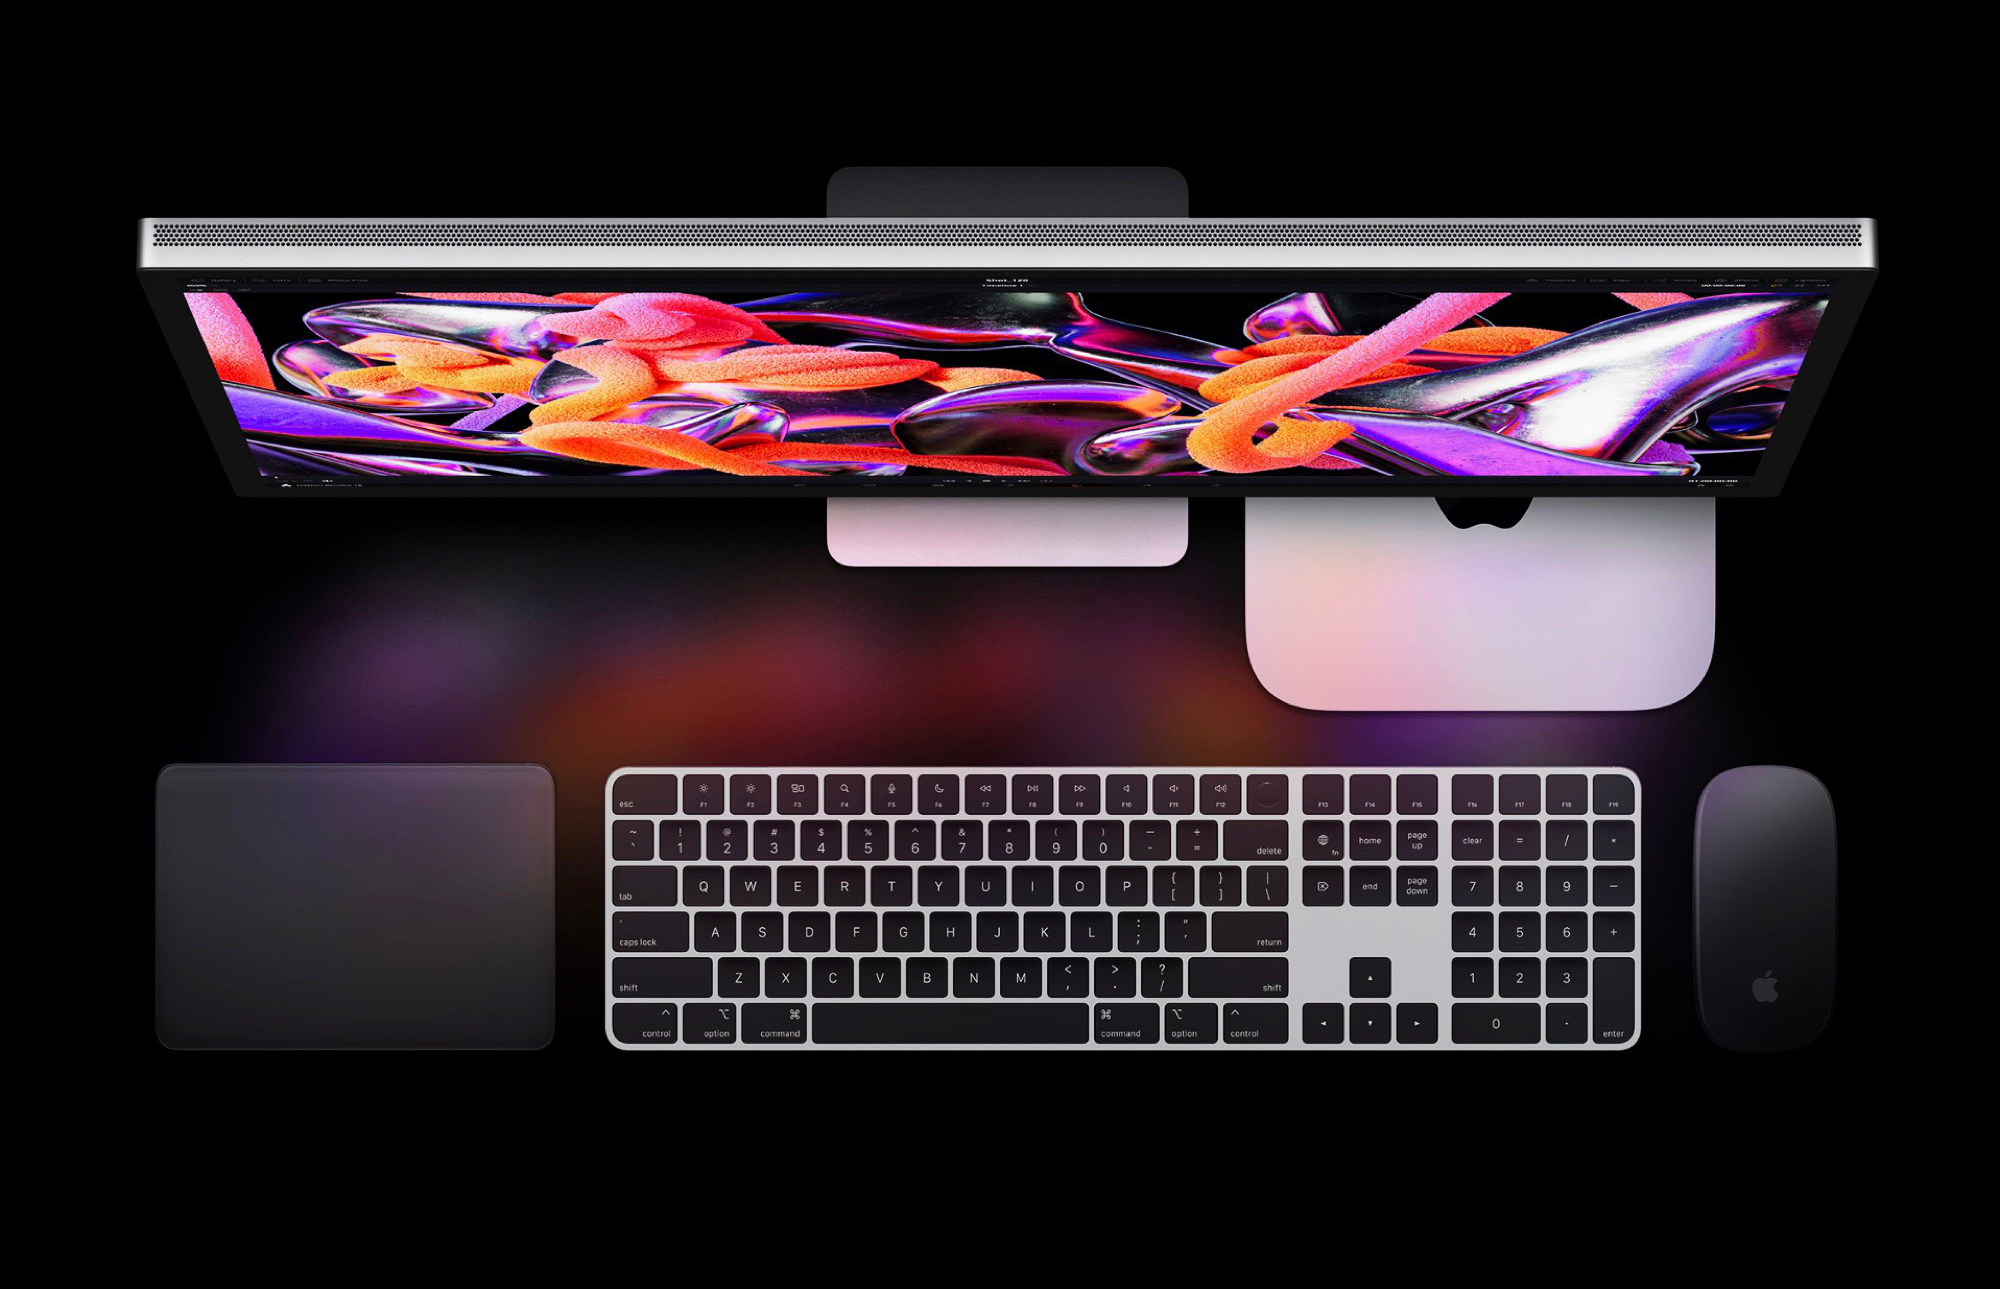 Apple les analystes donnent de nouveaux détails sur l'écran Studio Display  de 27 pouces avec mini-LEDs et support ProMotion 120 Hz -   News